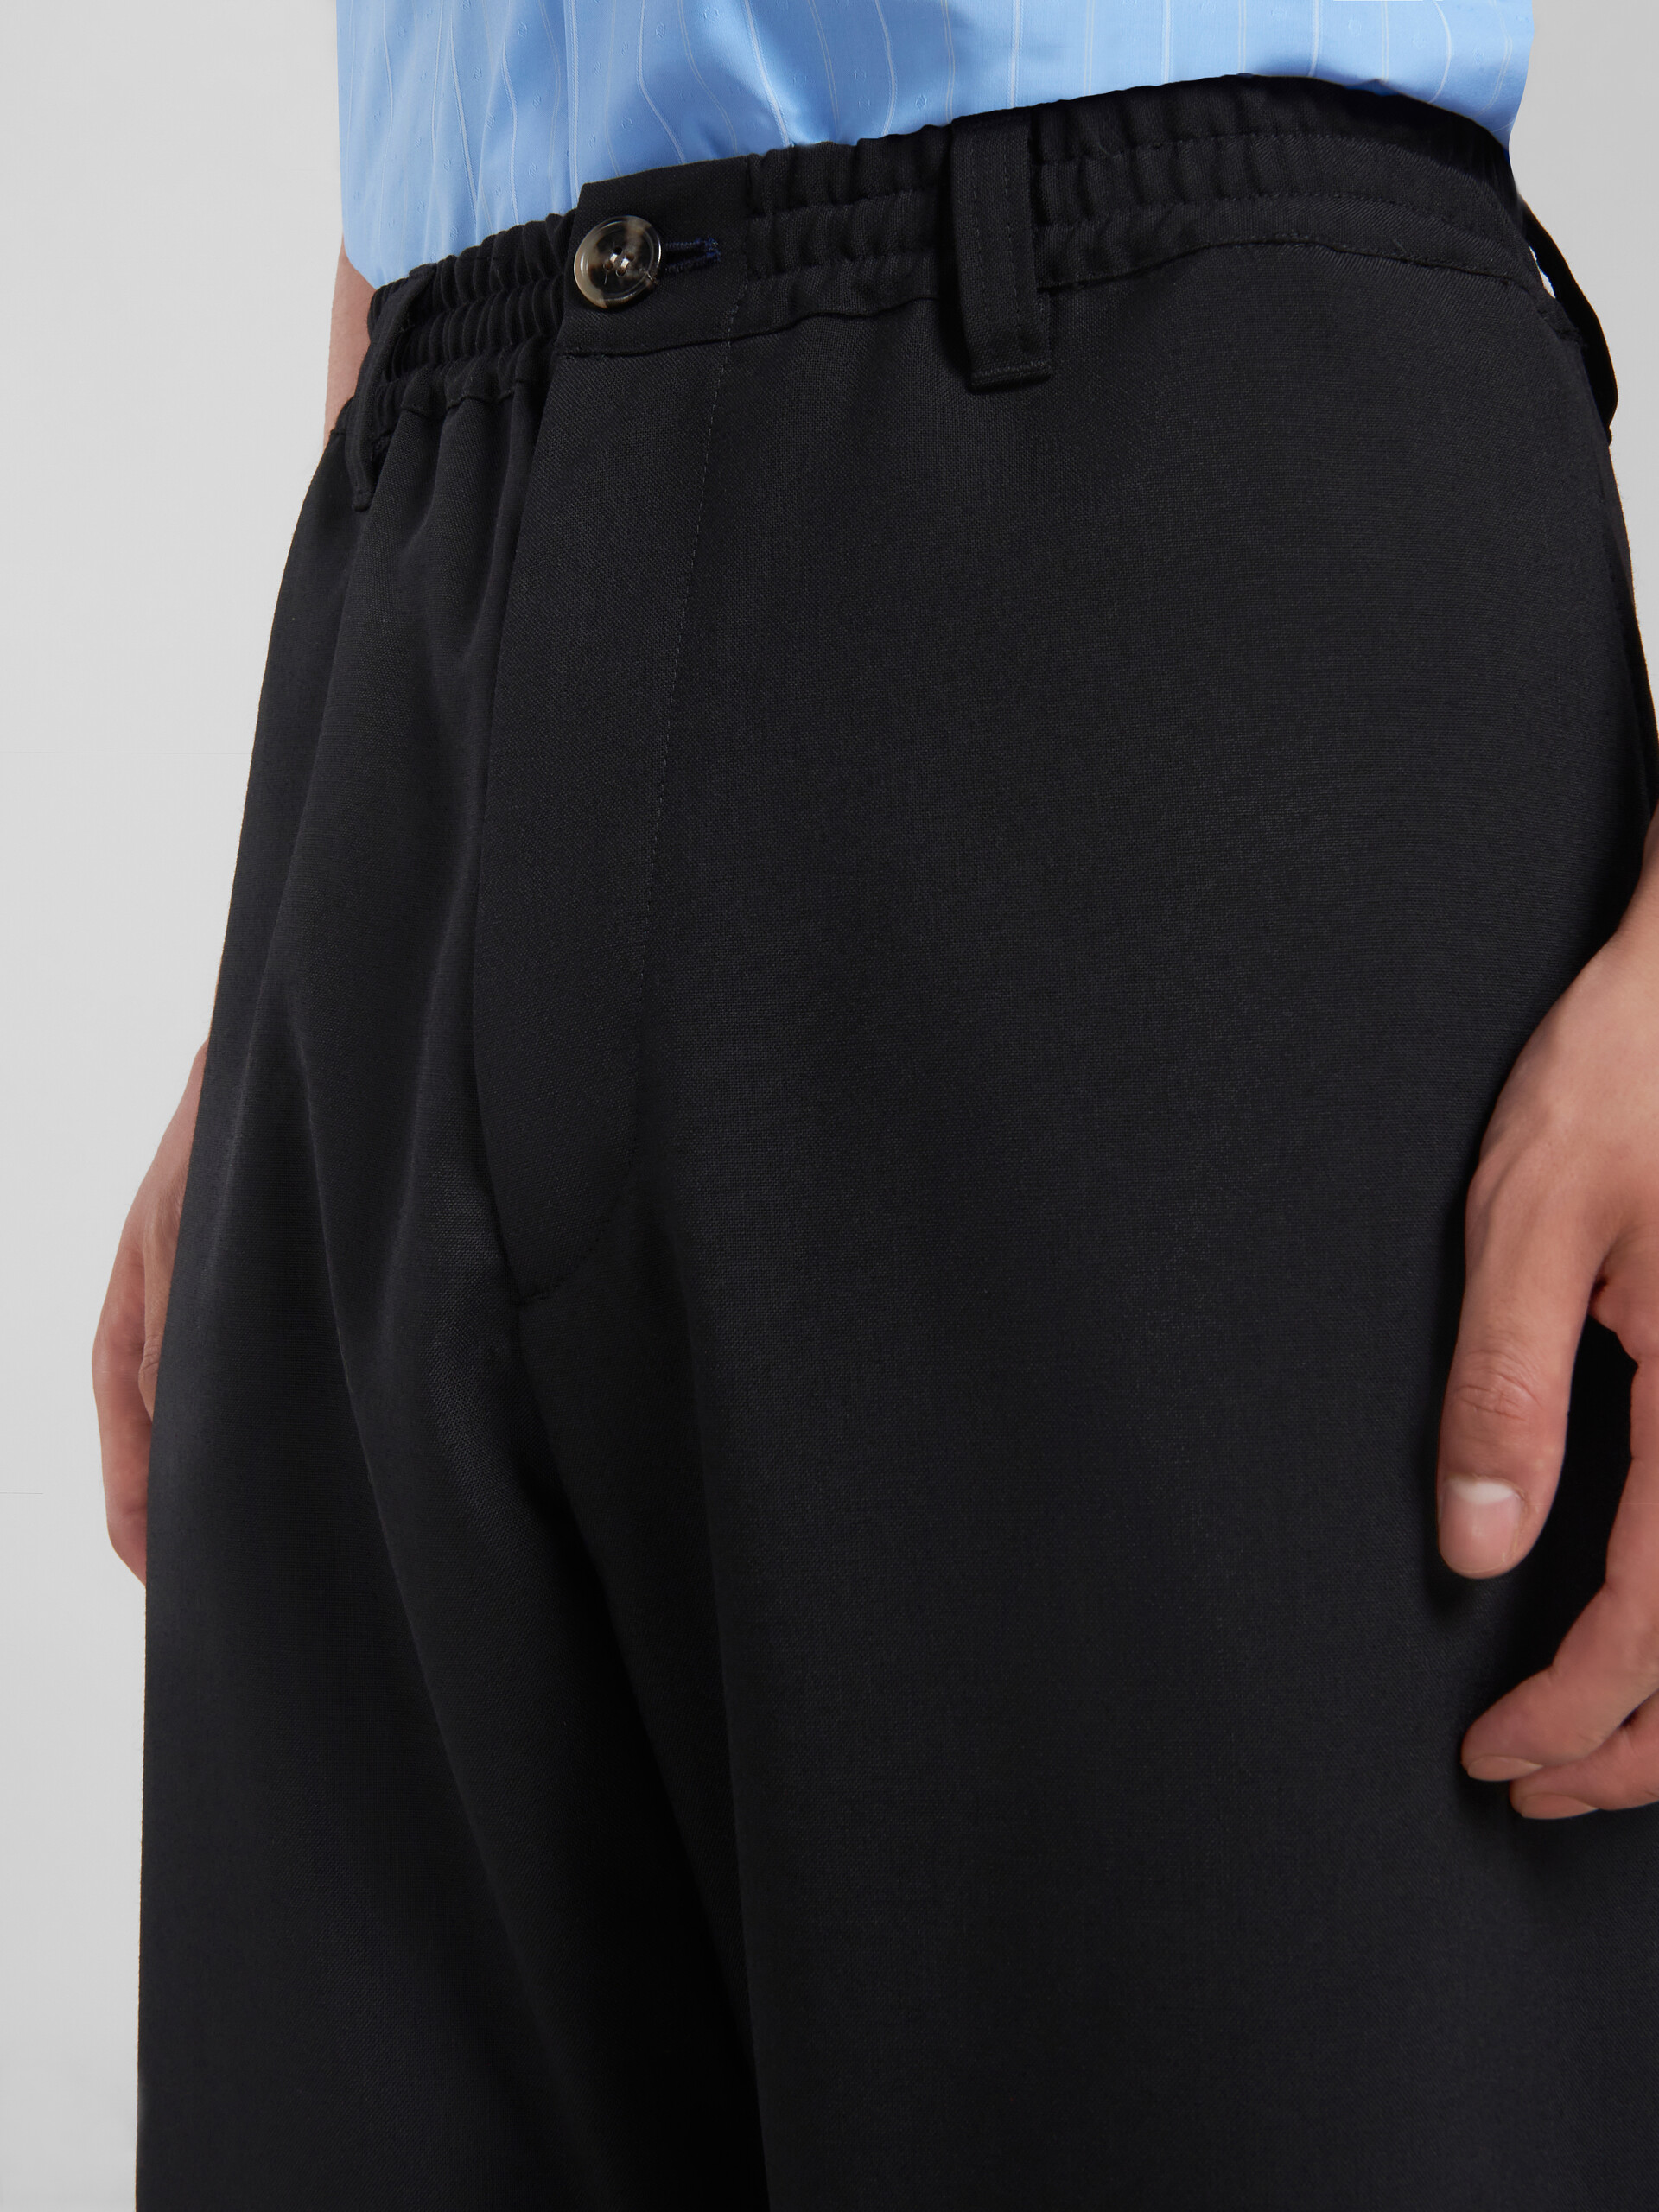 Schwarze Hose aus Tropenwolle - Hosen - Image 4